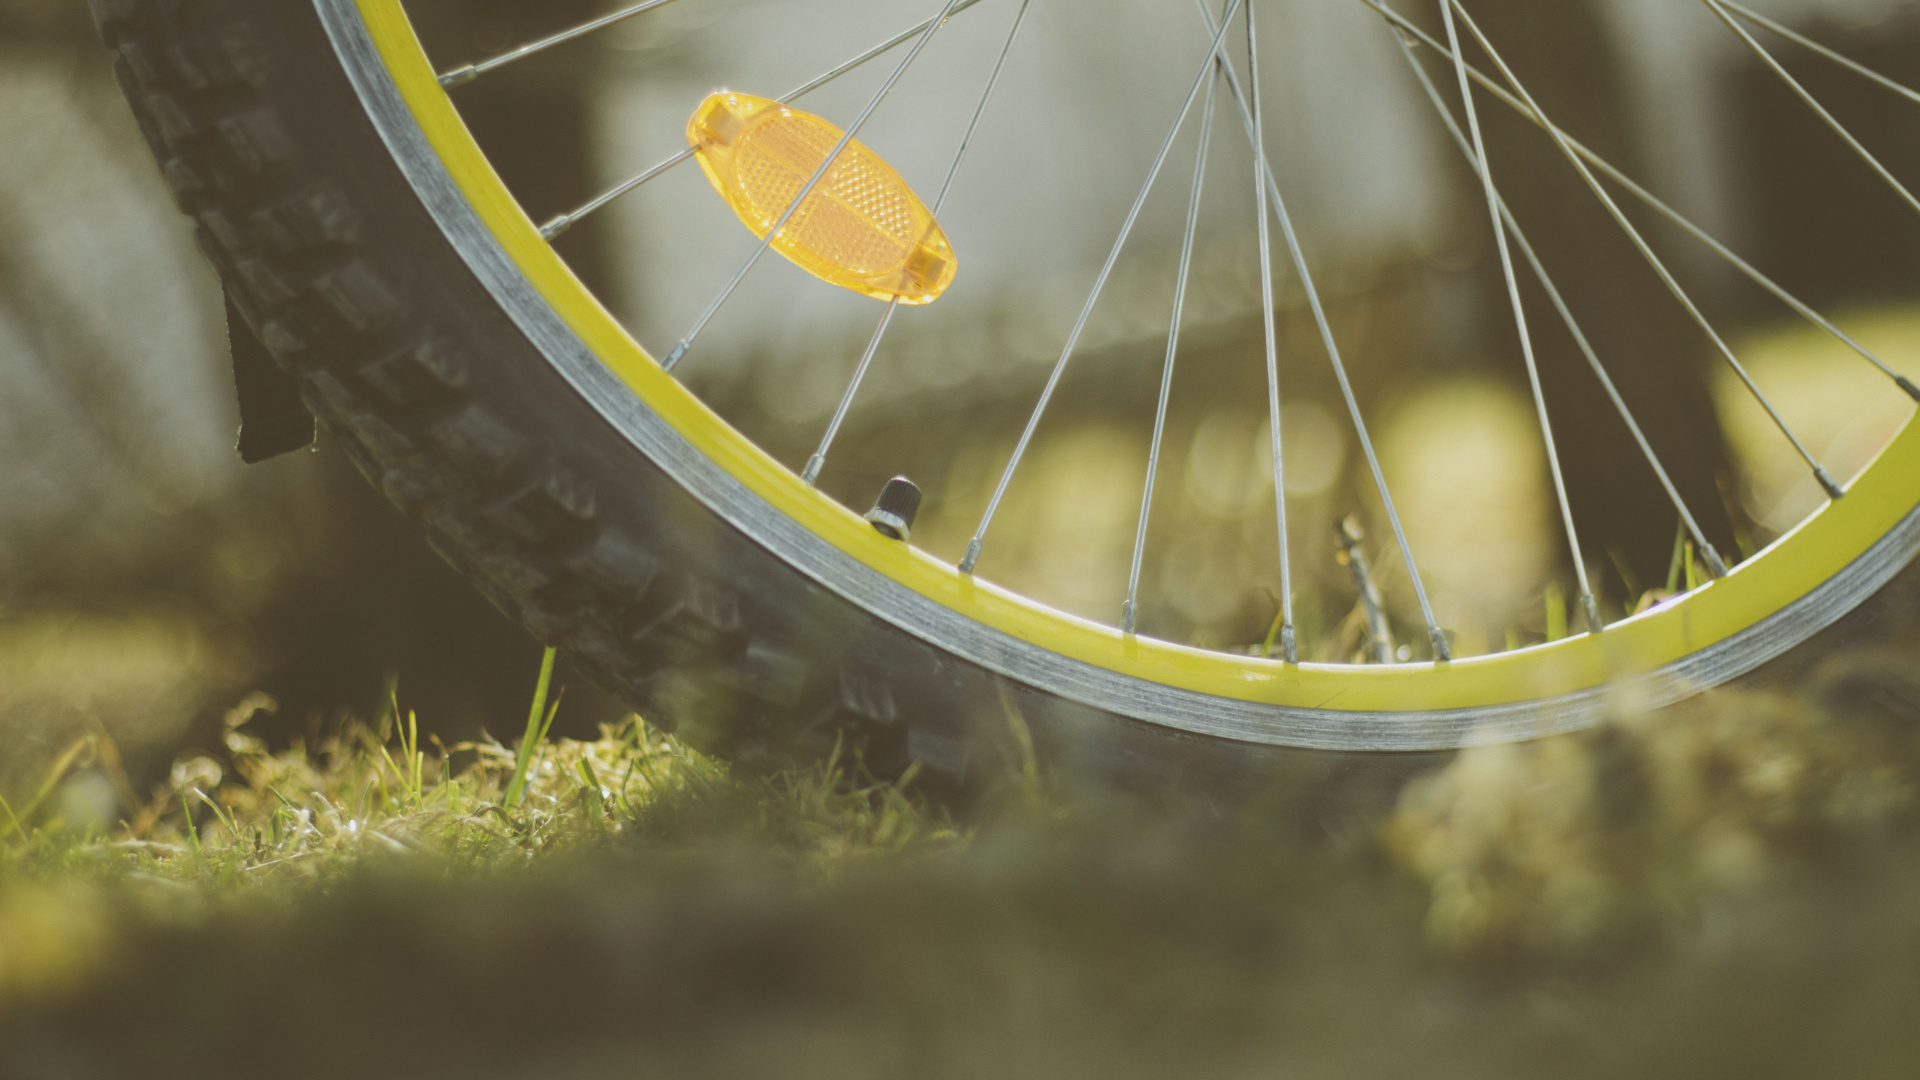 自行车, 自行车轮胎, 发言, 自行车轮, 轮胎 壁纸 1920x1080 允许